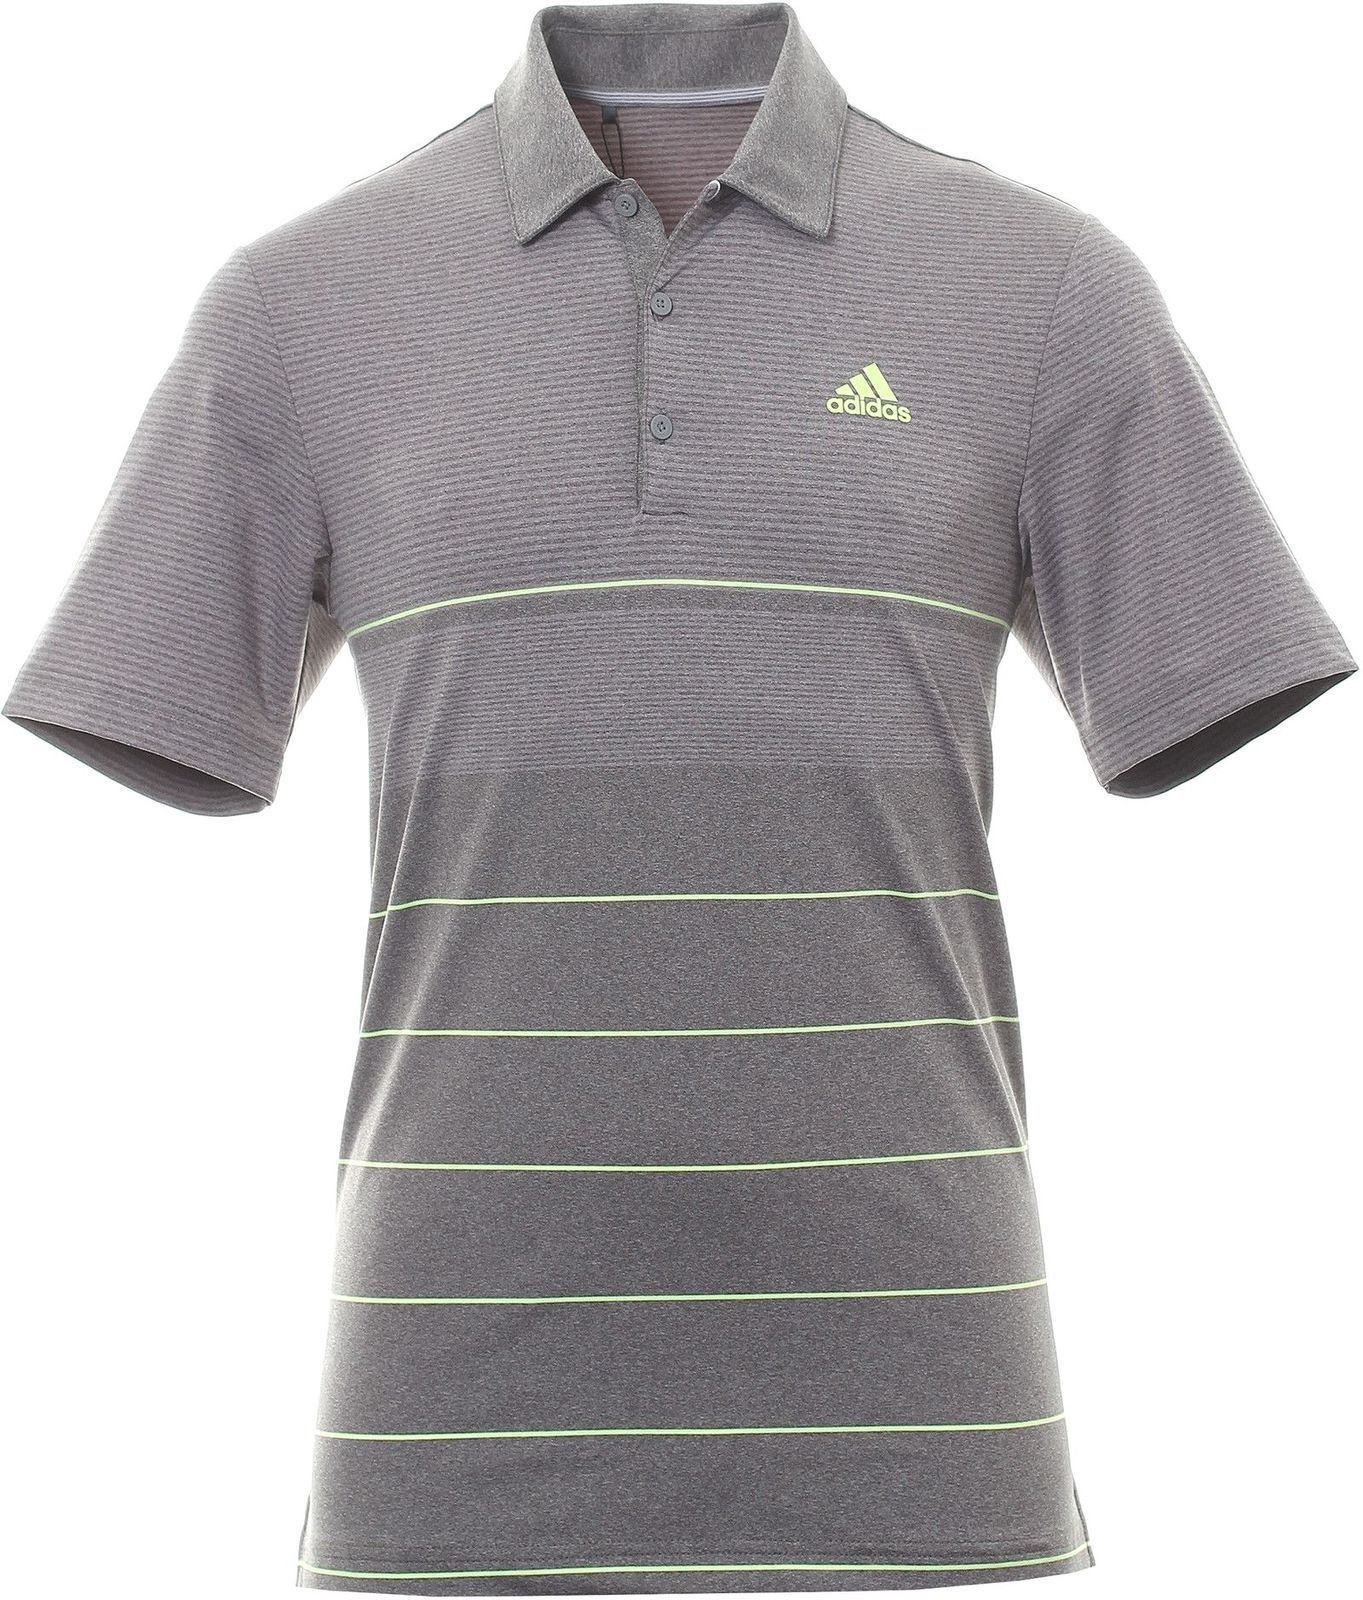 Camiseta polo Adidas Ultimate365 Heathered Stripe Mens Polo Grey/Yellow XL